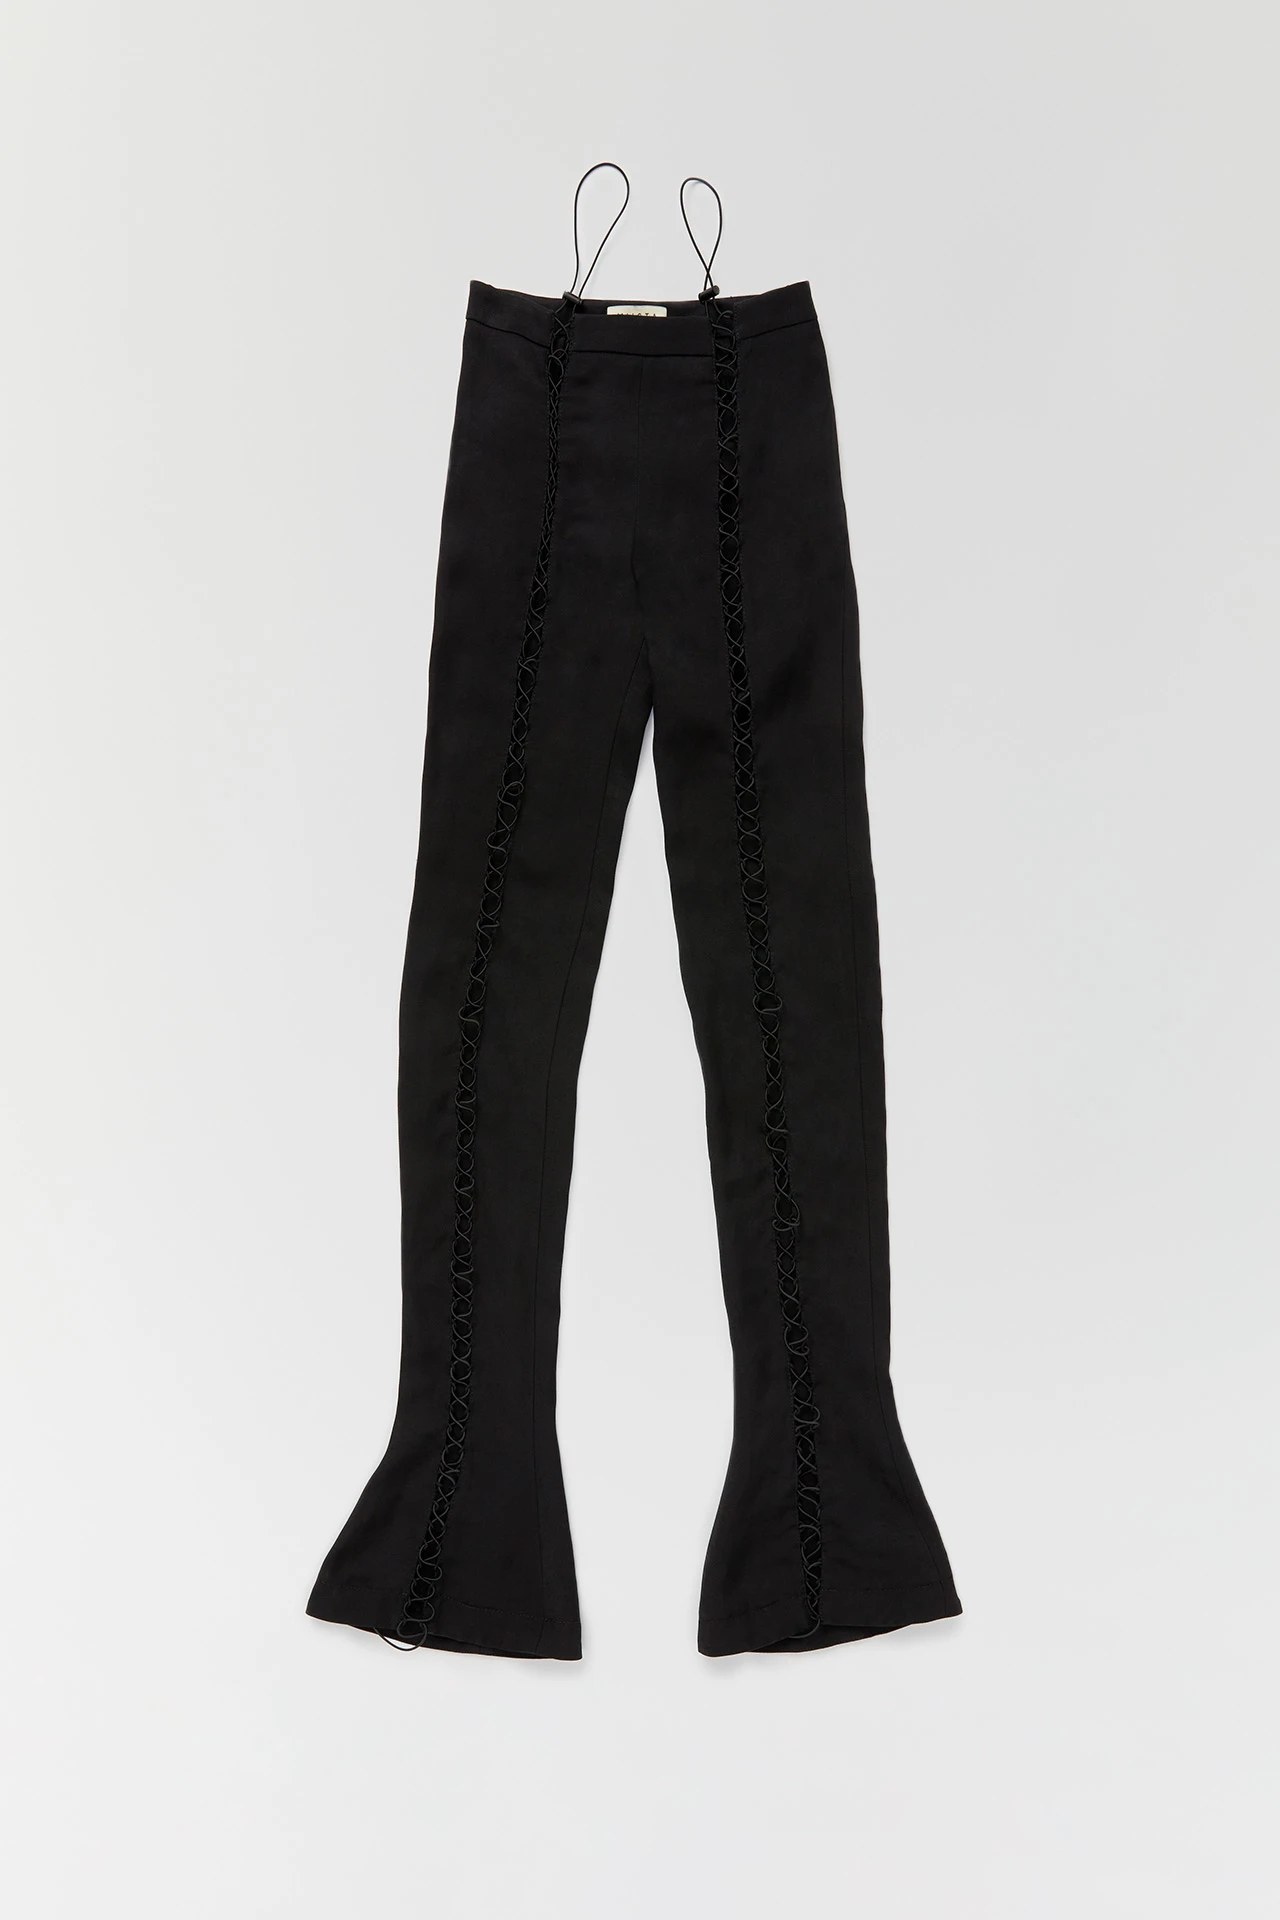 Miista-tini-black-trousers-01